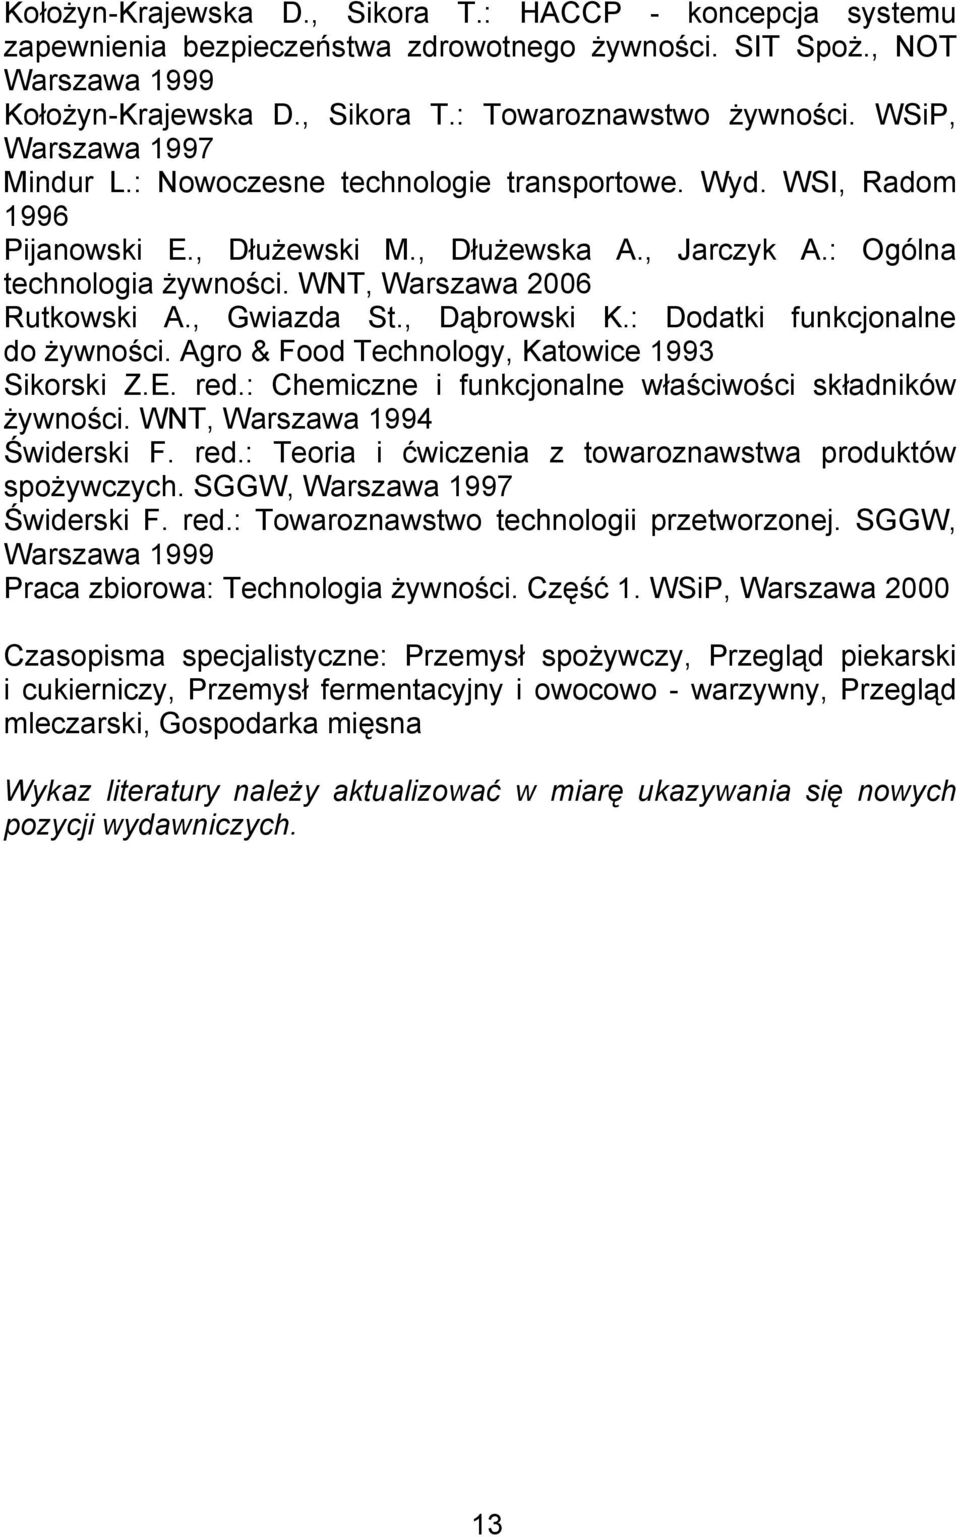 WNT, Warszawa 2006 Rutkowski A., Gwiazda St., Dąbrowski K.: Dodatki funkcjonalne do żywności. Agro & Food Technology, Katowice 1993 Sikorski Z.E. red.